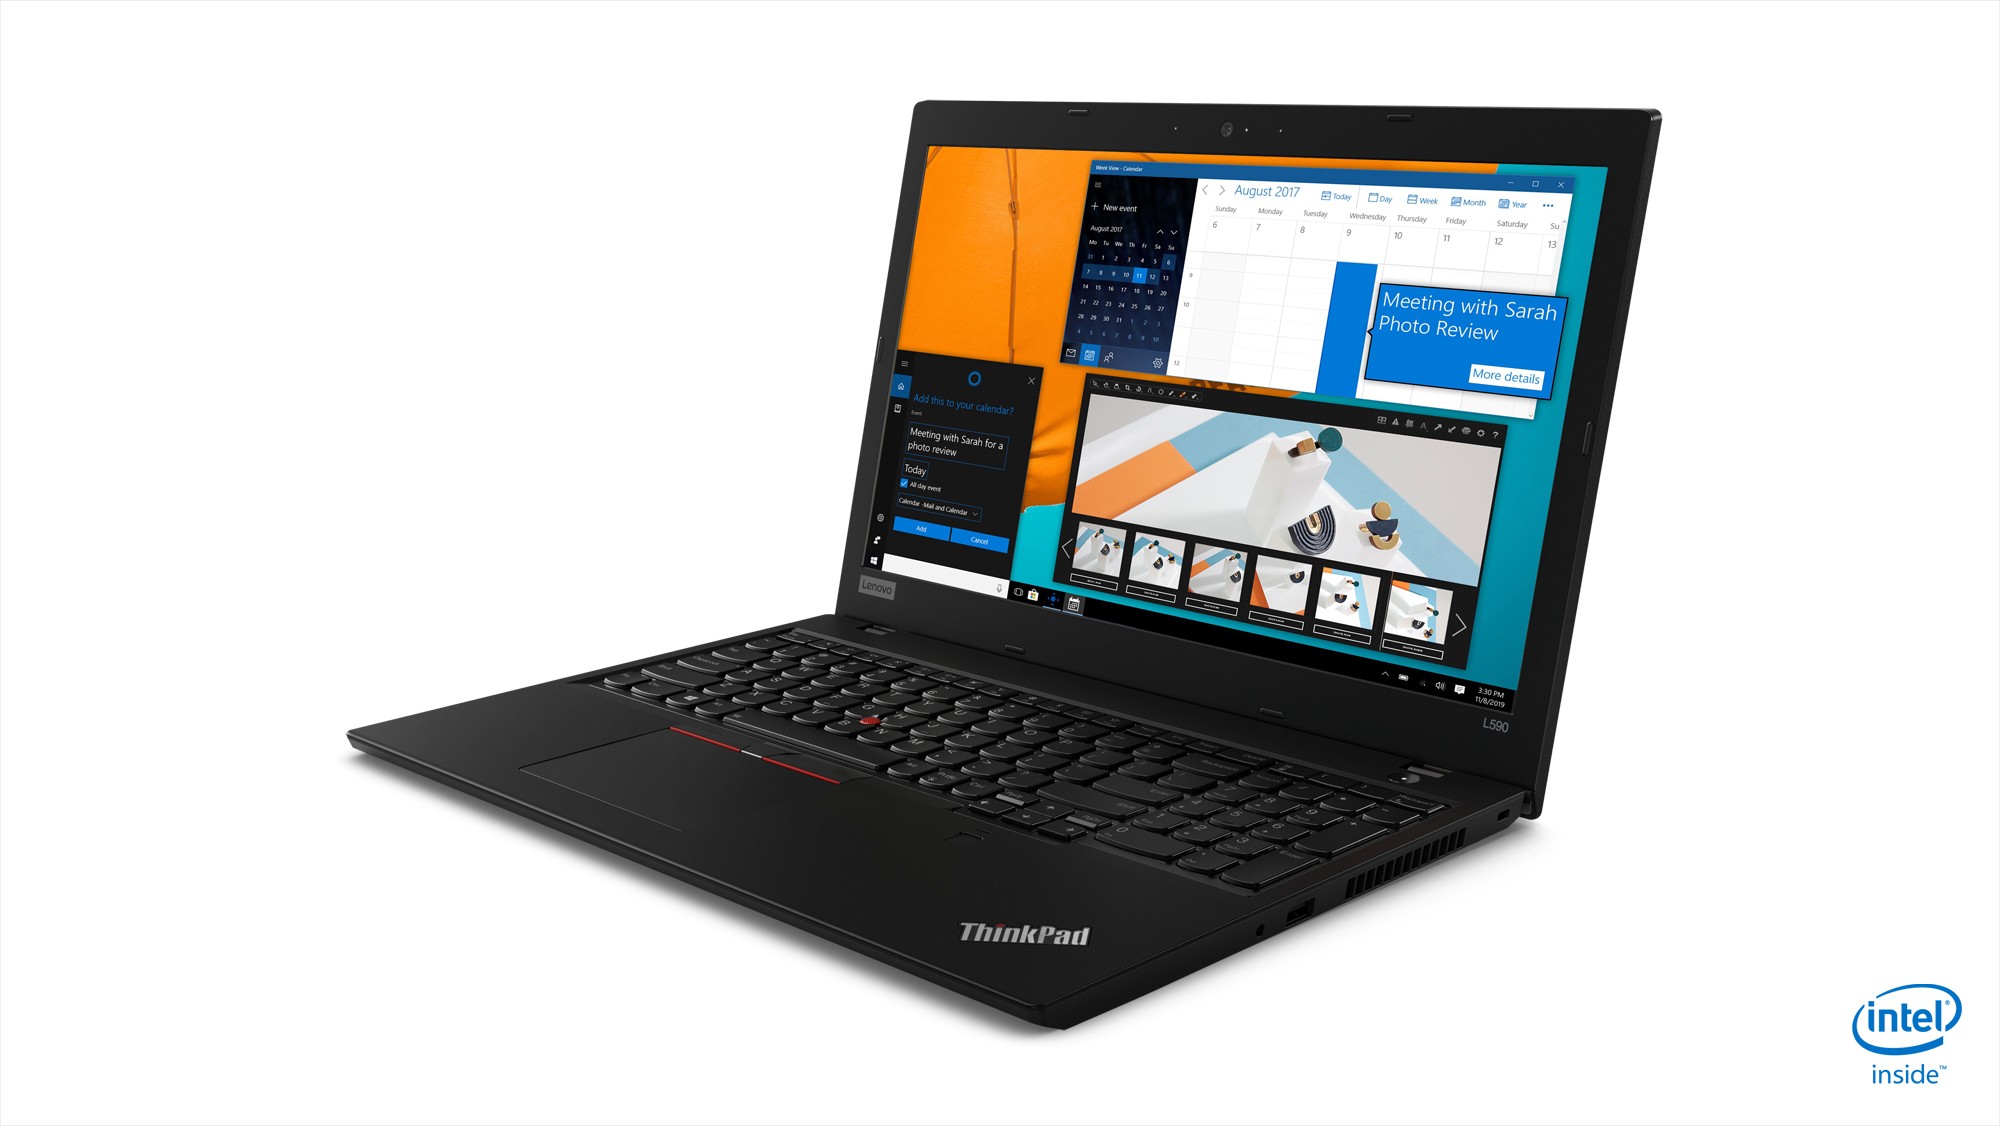 Lenovo ThinkPad L590 15.6" FHD i7-8565U 1.8GHz 8GB 256GB SSD W10P Laptop R